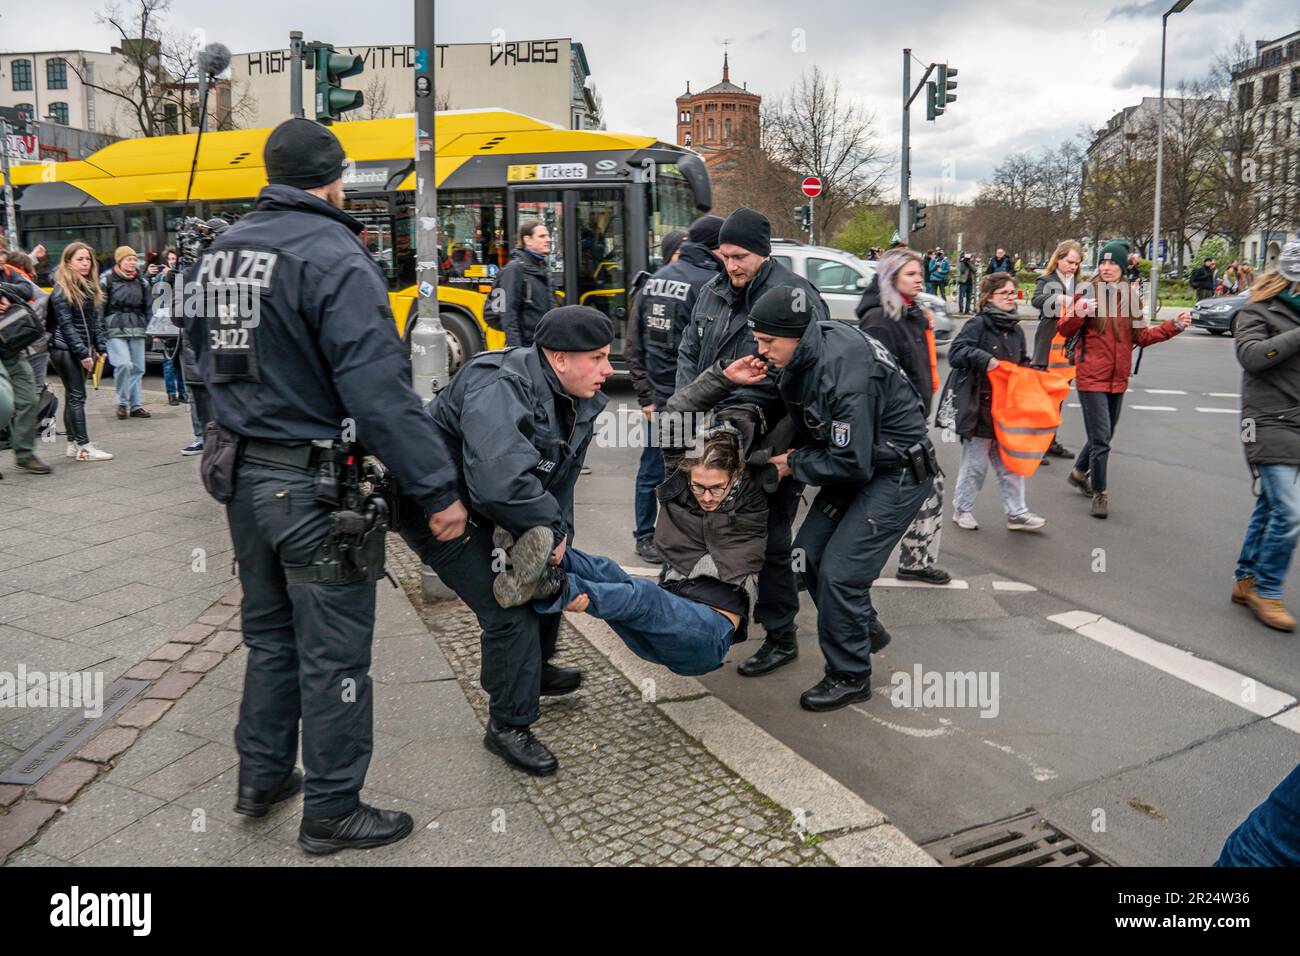 Letzte Generation blockiert Schillingbrücke in Berlin, Polizeieinsatz Stockfoto